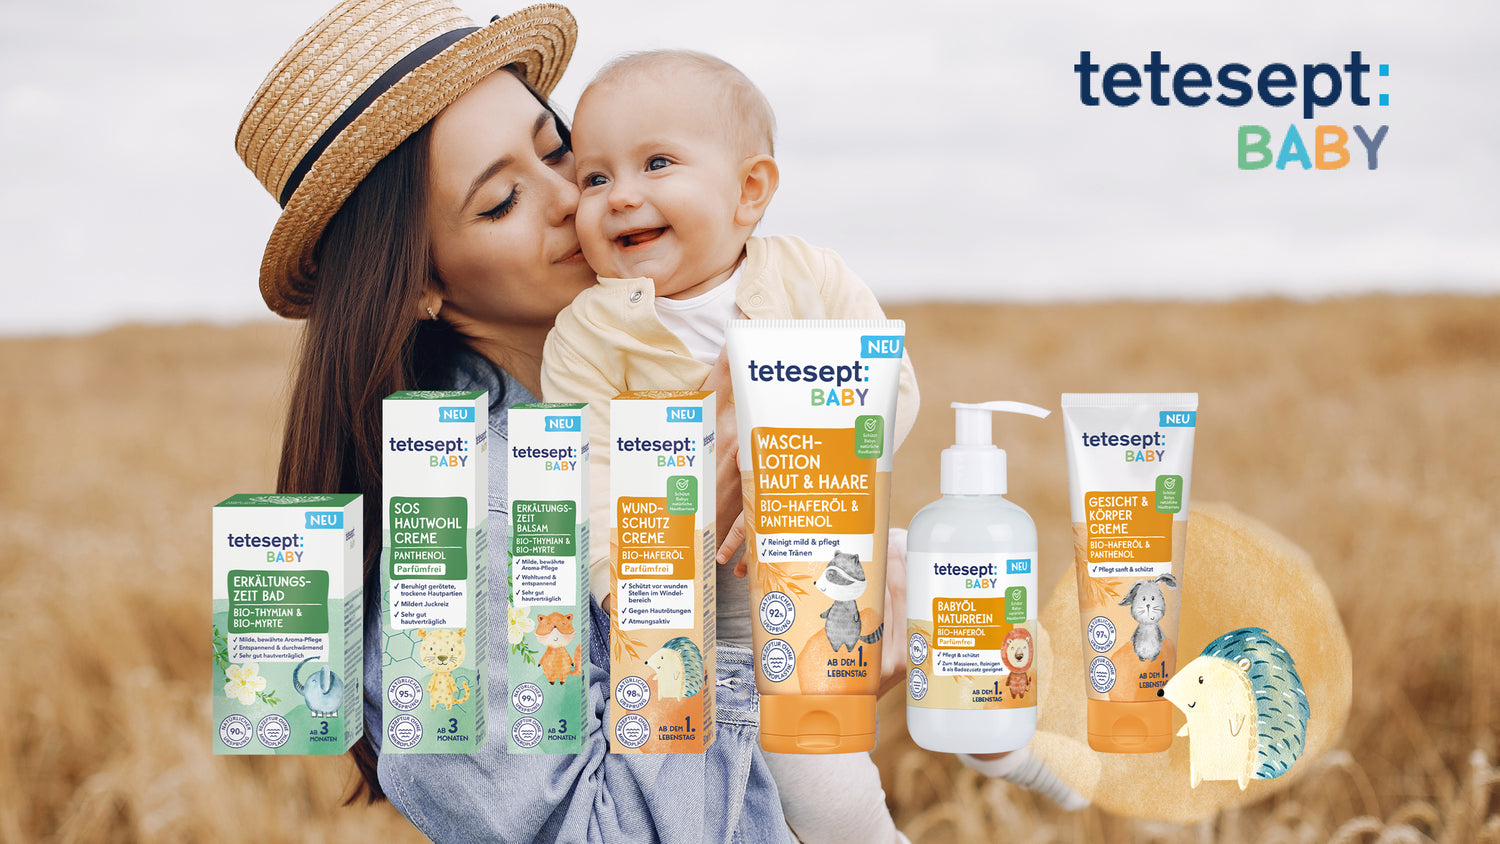 tetesept Baby Banner Frau mit Kind auf dem Arm im Vordergrund die Produktreihe.